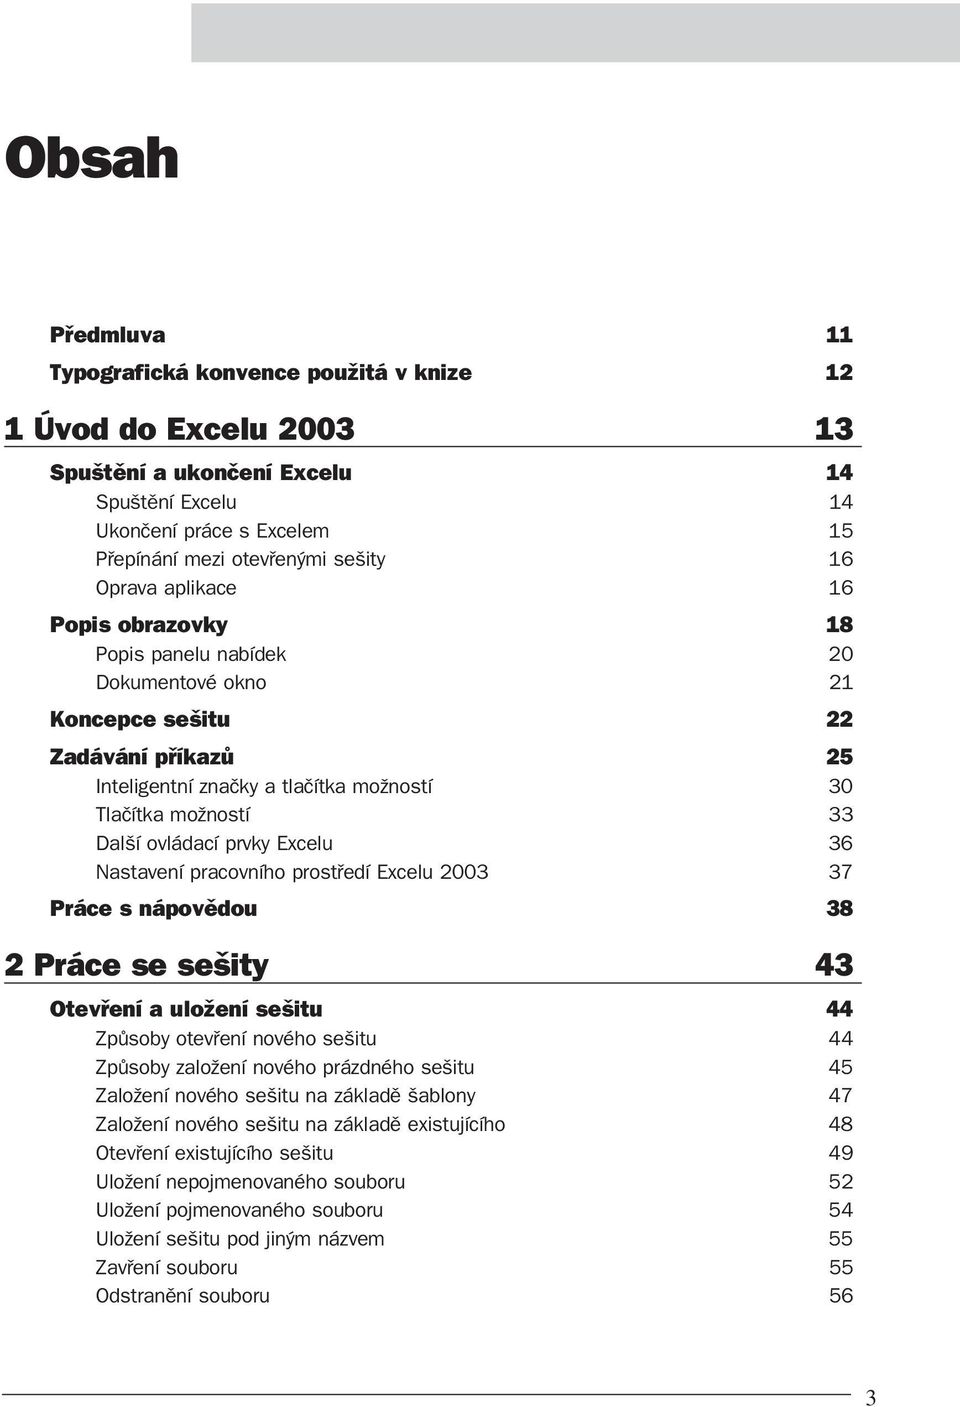 Excelu 36 Nastavení pracovního prostředí Excelu 2003 37 Práce s nápovědou 38 2 Práce se sešity 43 Otevření a uložení sešitu 44 Způsoby otevření nového sešitu 44 Způsoby založení nového prázdného